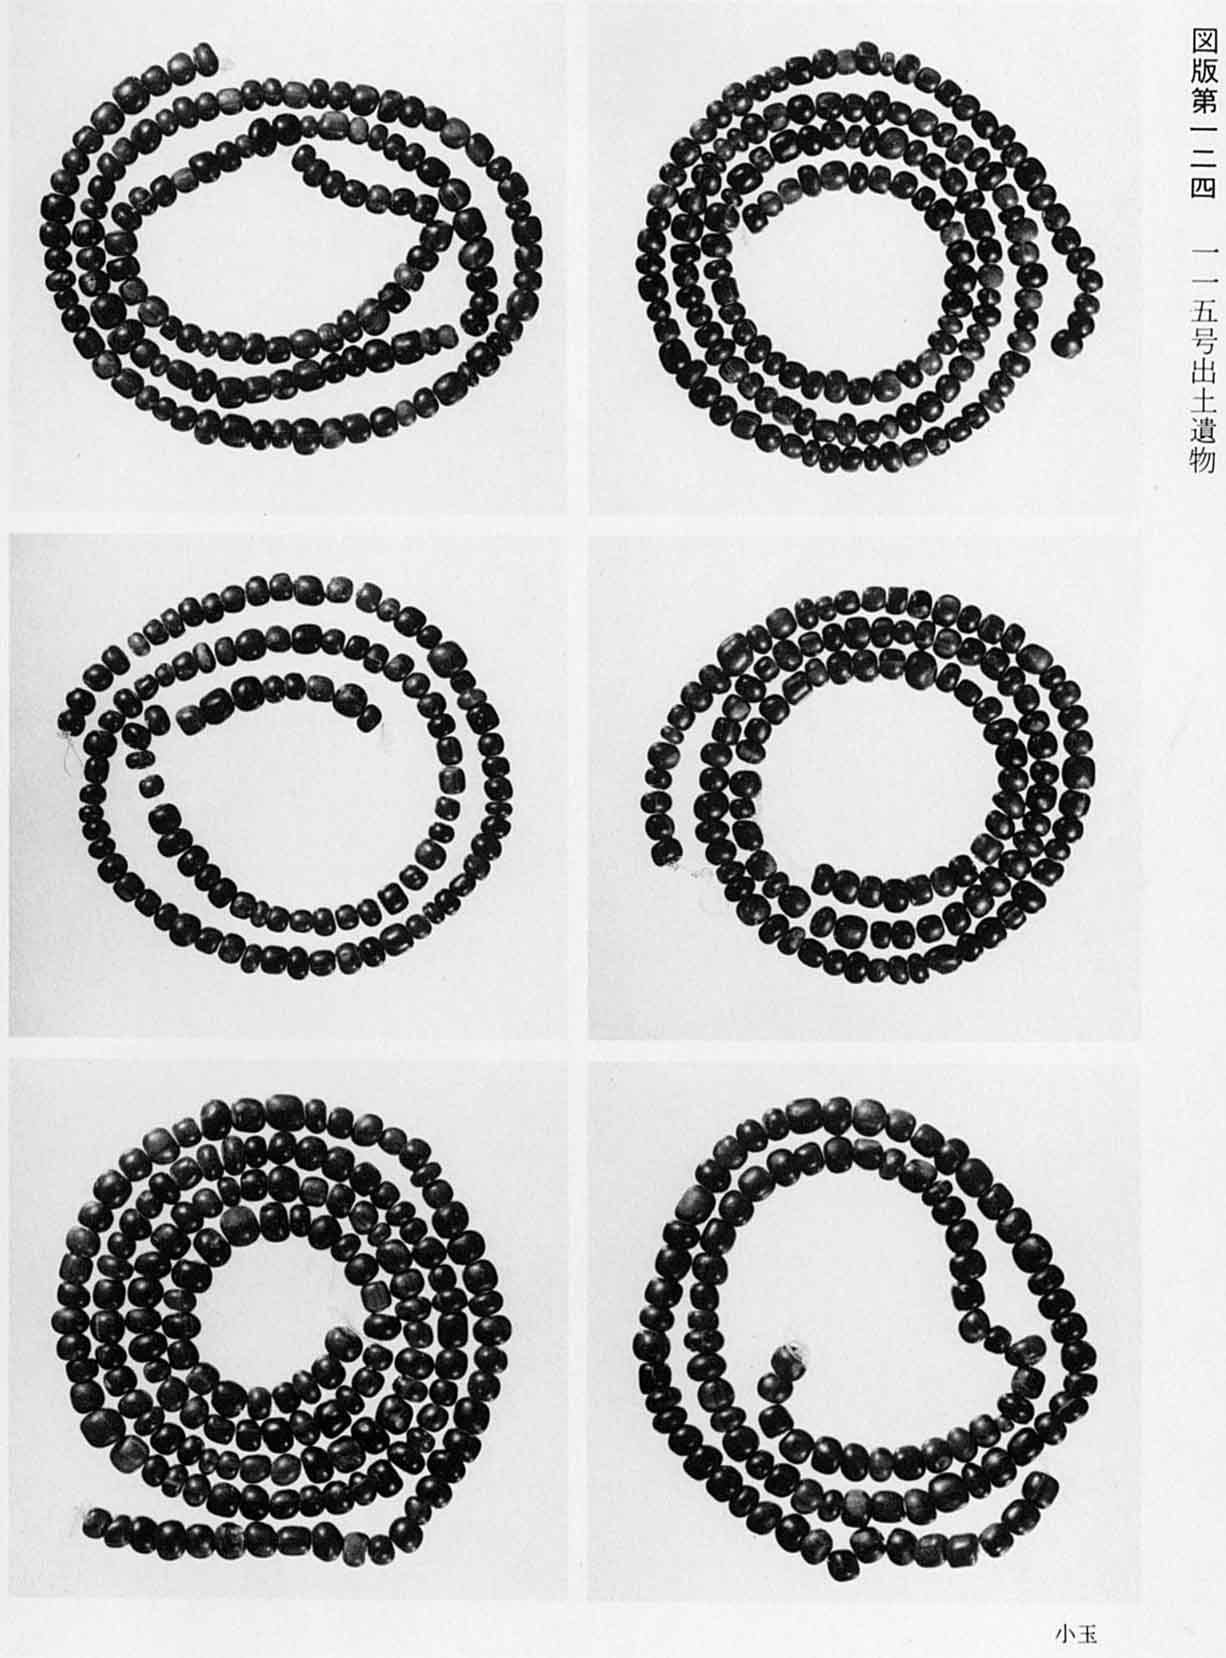 小さな石をつなぎ合わせて渦巻き状に置かれている6種類の小玉がそれぞれ撮影されている、図版124 115号出土遺物のモノクロ写真